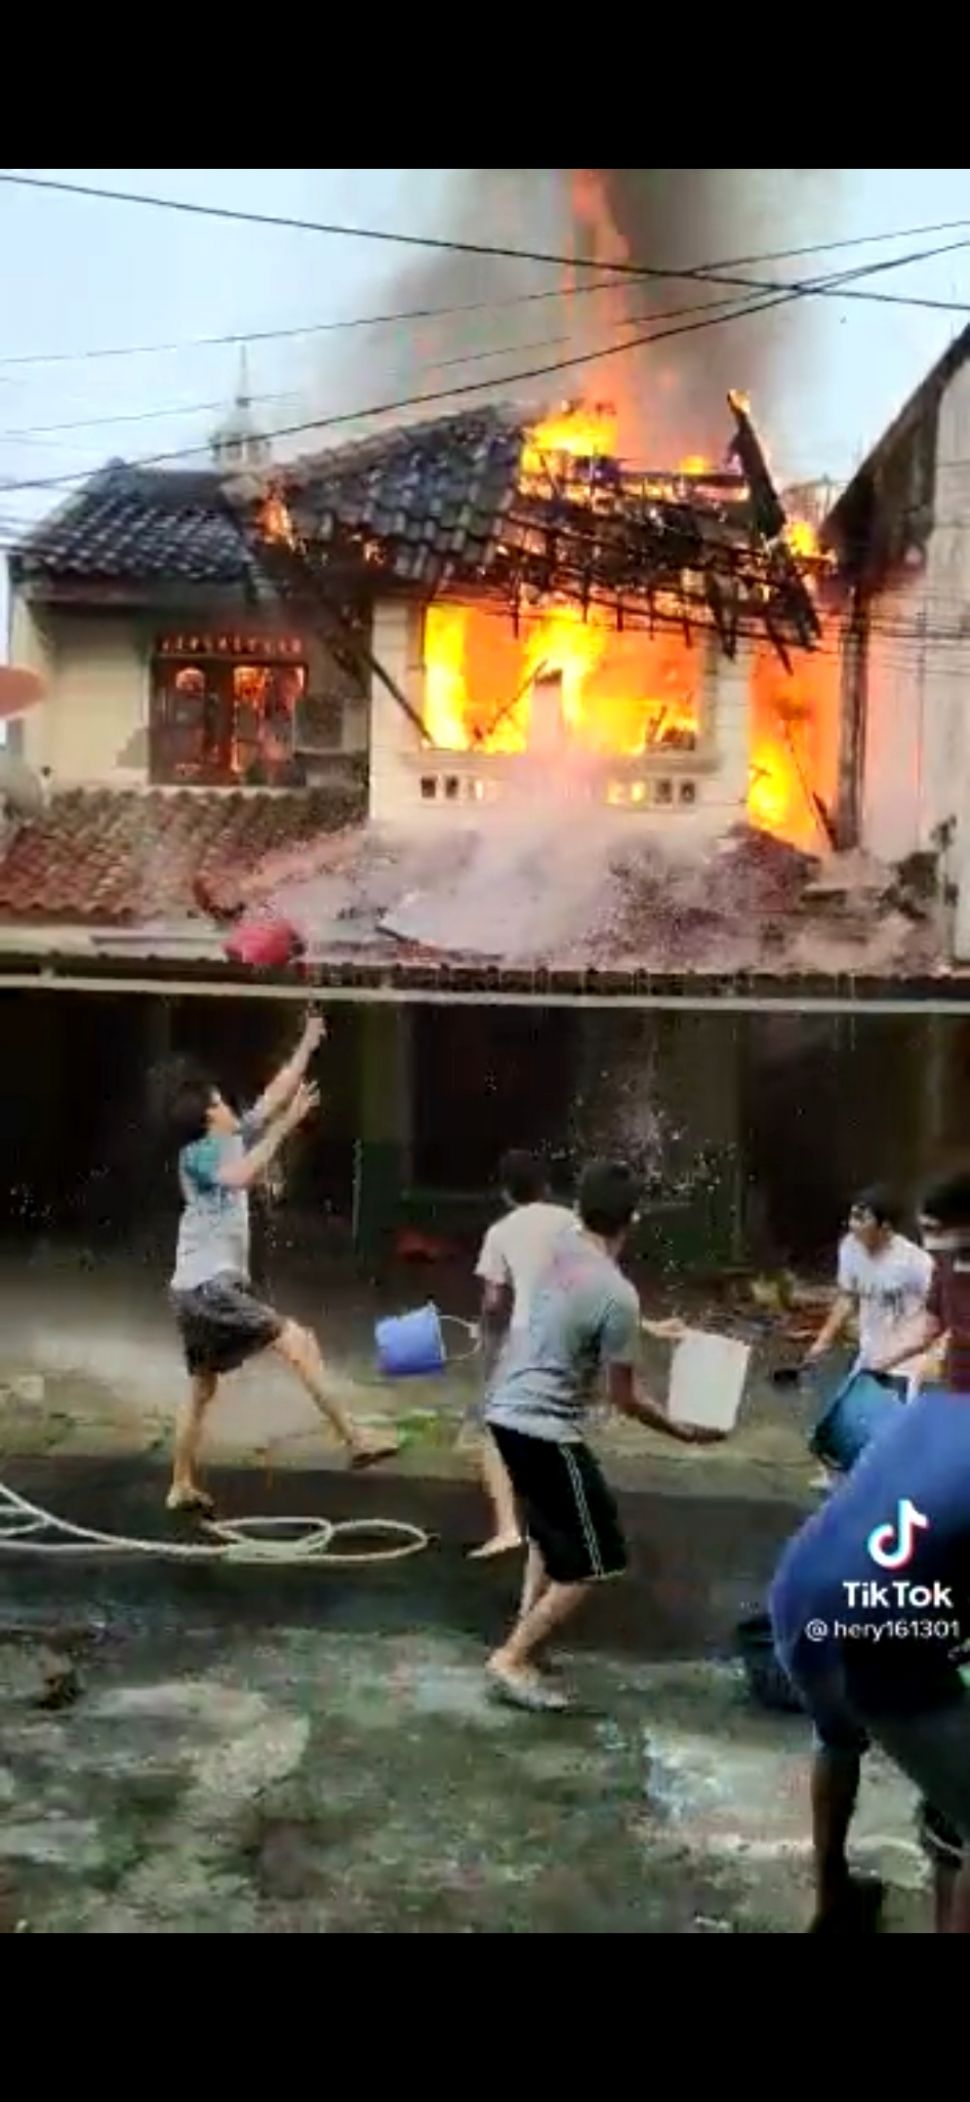 Viral Video Warga Padamkan Api Saat Kebakaran, Lelaki Berember Merah Jadi Sorotan (TikTok/hery161301)